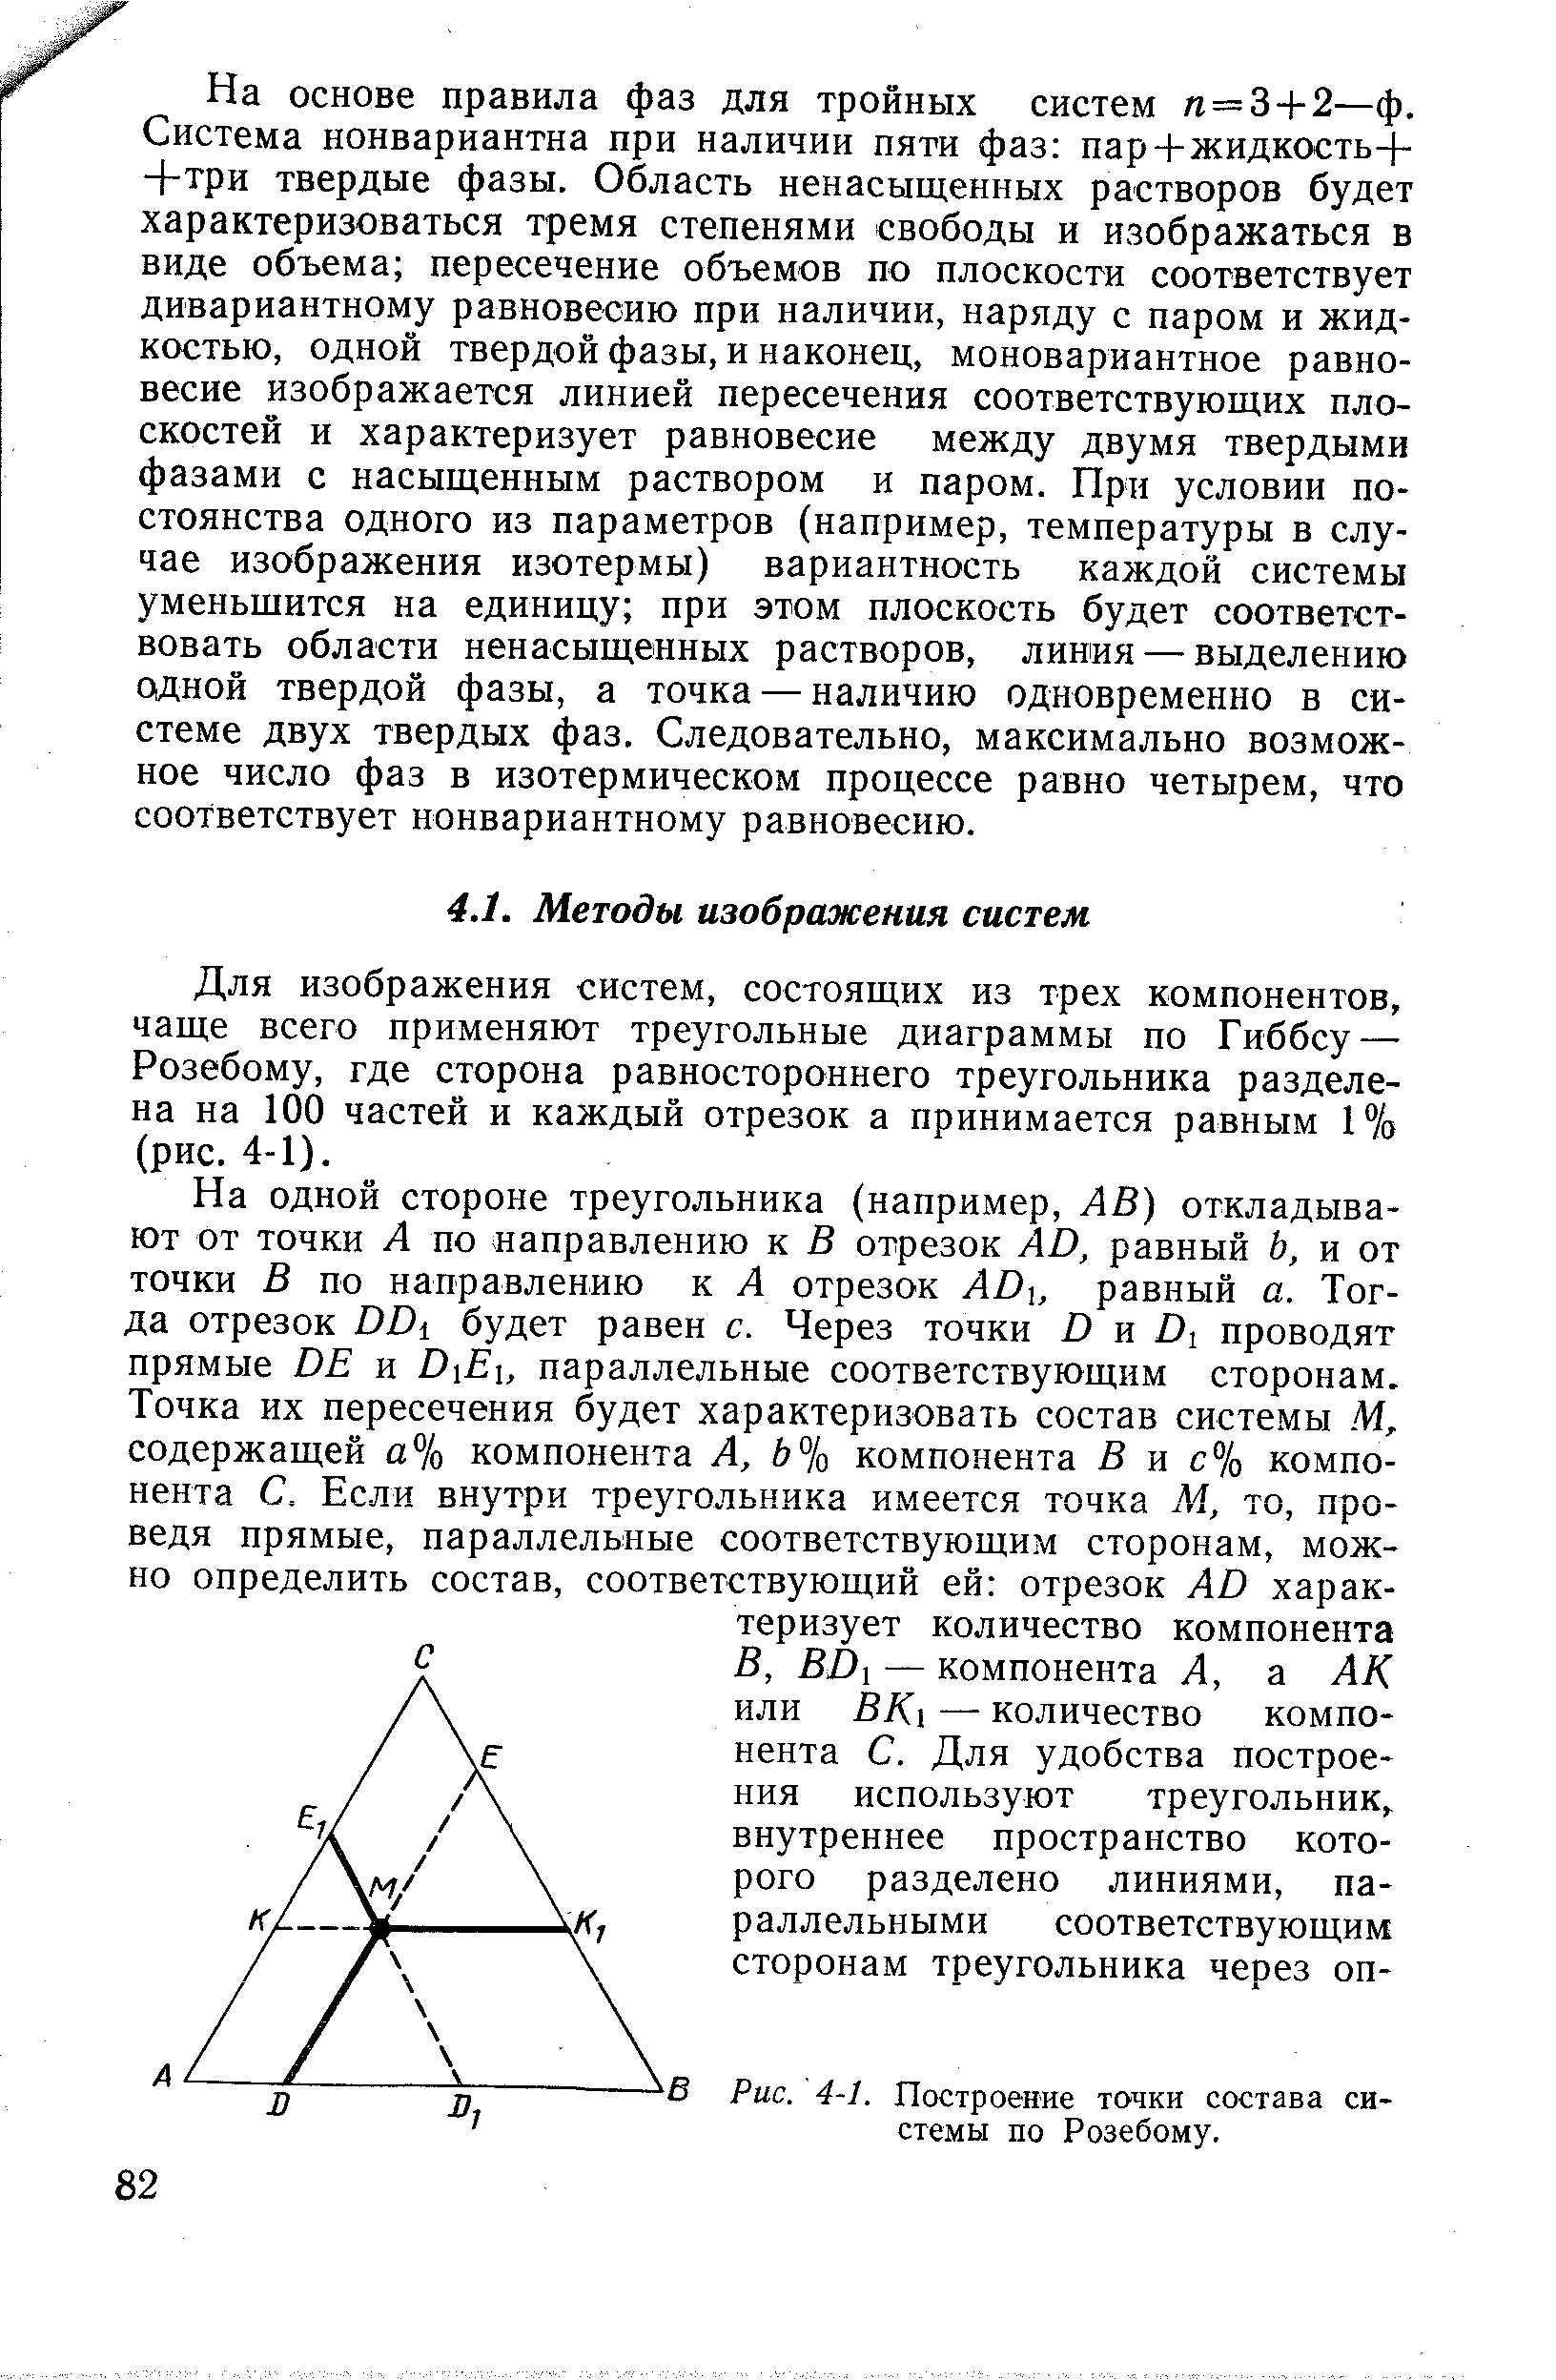 Для изображения систем, состоящих из трех компонентов, чаще всего применяют треугольные диаграммы по Гиббсу — Розебому, где сторона равностороннего треугольника разделена на 100 частей и каждый отрезок а принимается равным 1 /о (рис. 4-1).
